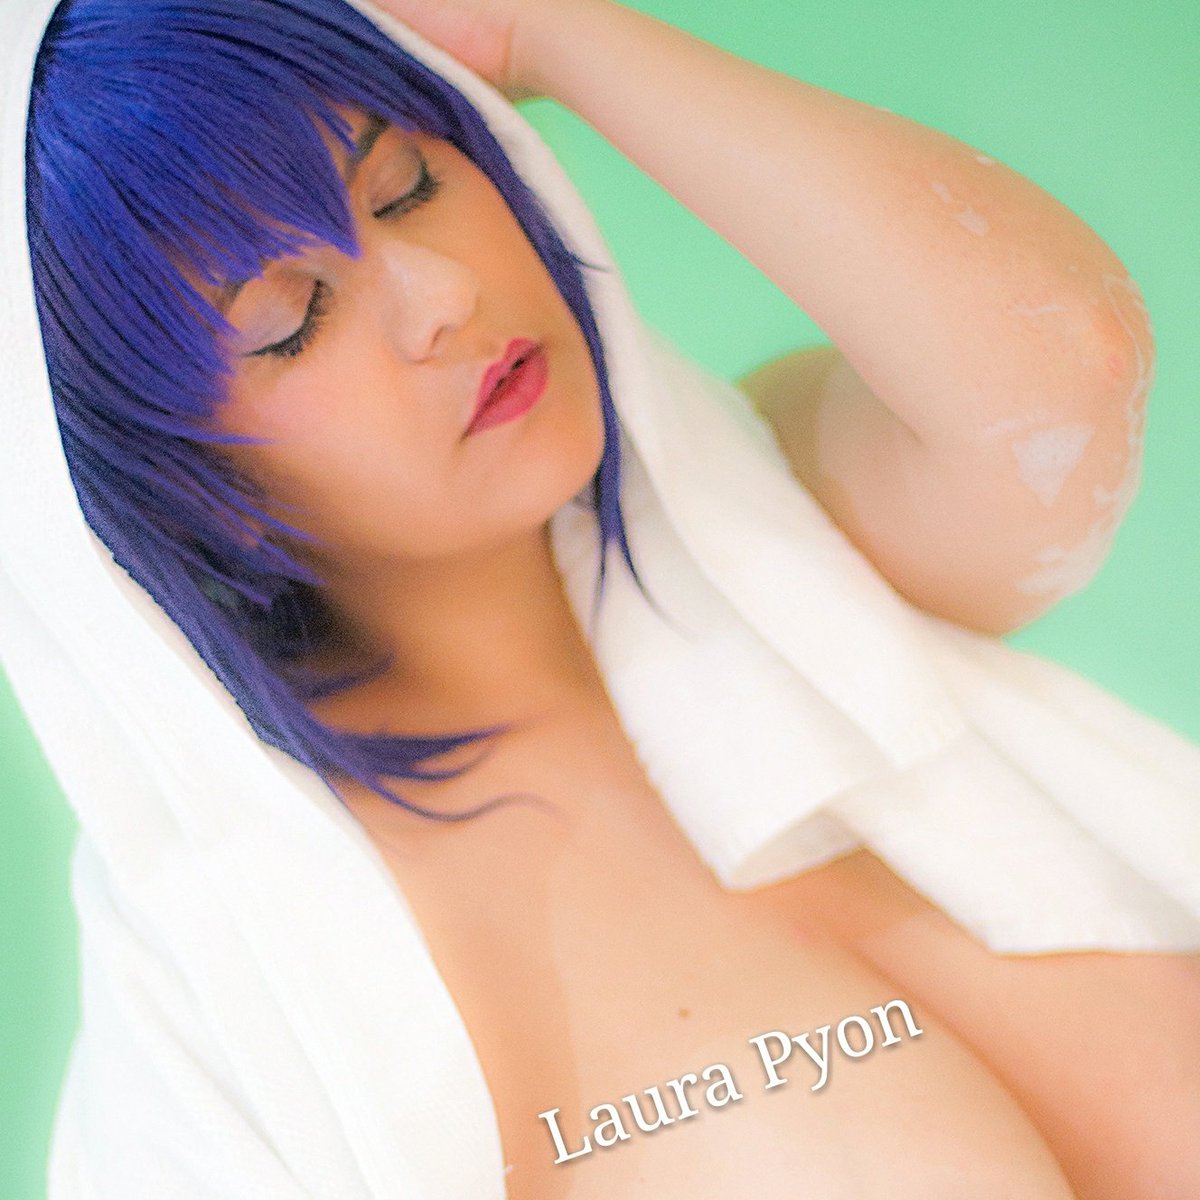 Laura pyon nude